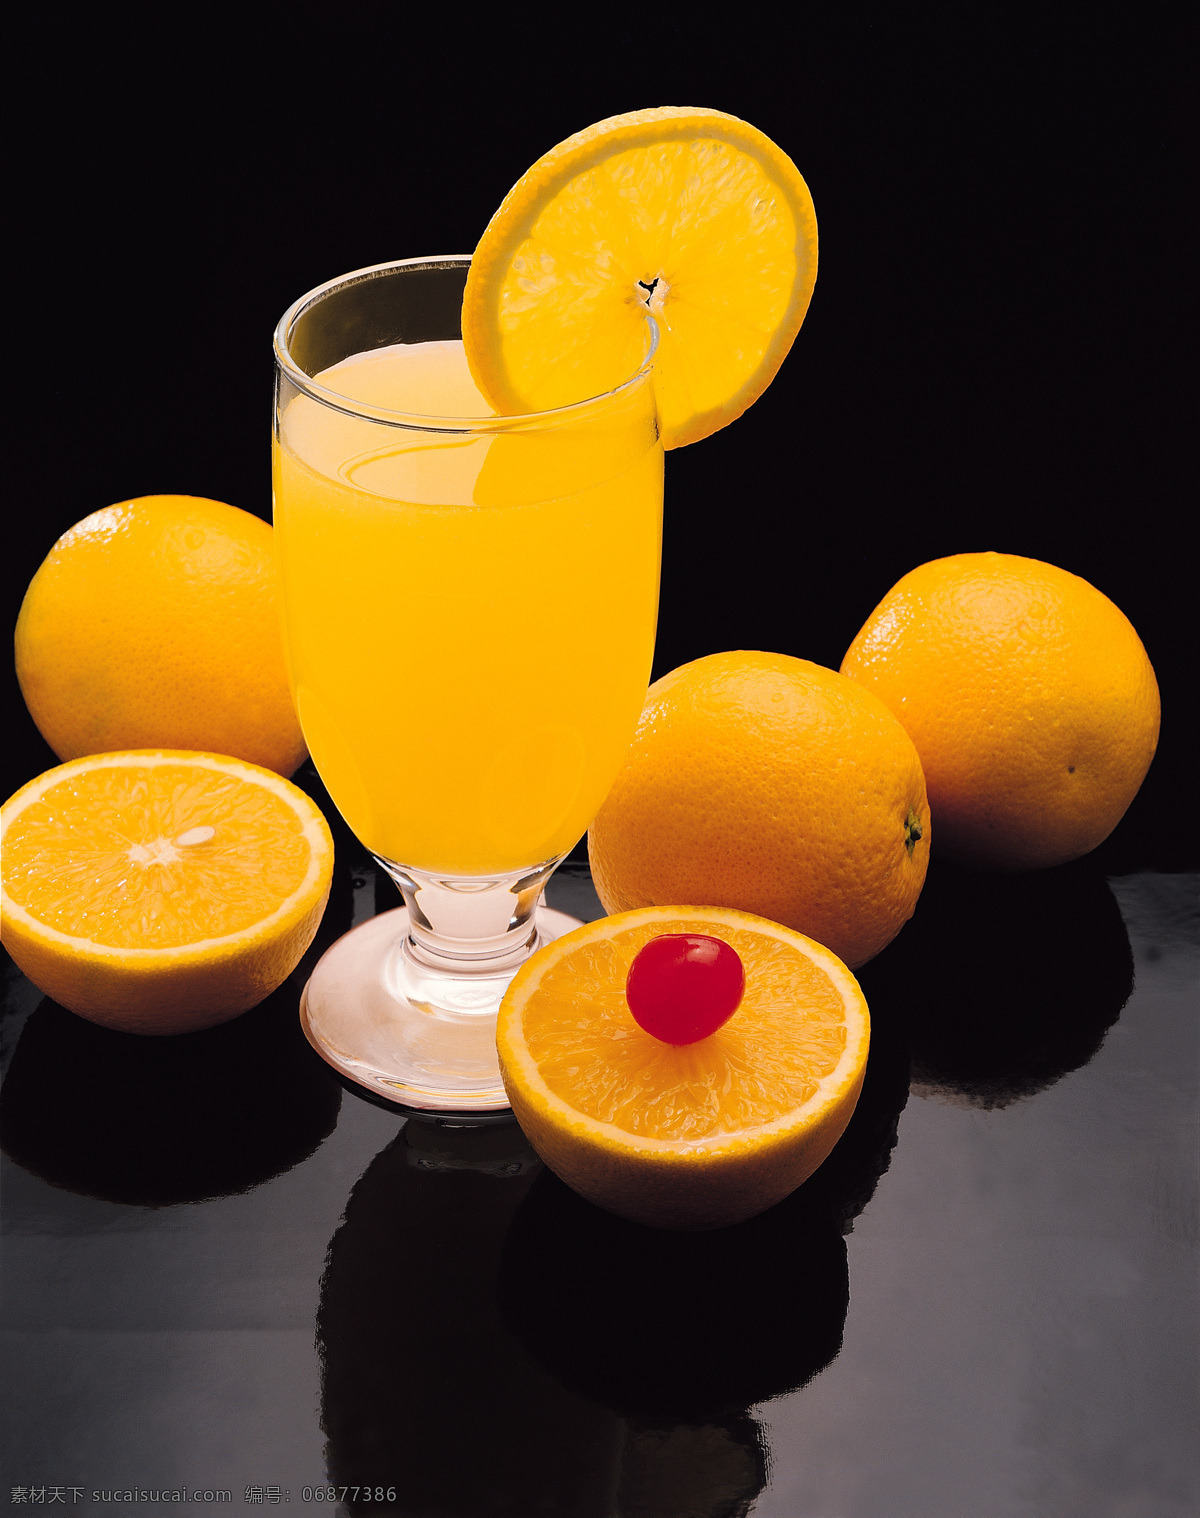 杯子 餐饮美食 橙色 橙子 桔子 摄影图库 水果饮料 饮料 水果 水果饮料1 樱桃 饮料酒水 矢量图 日常生活